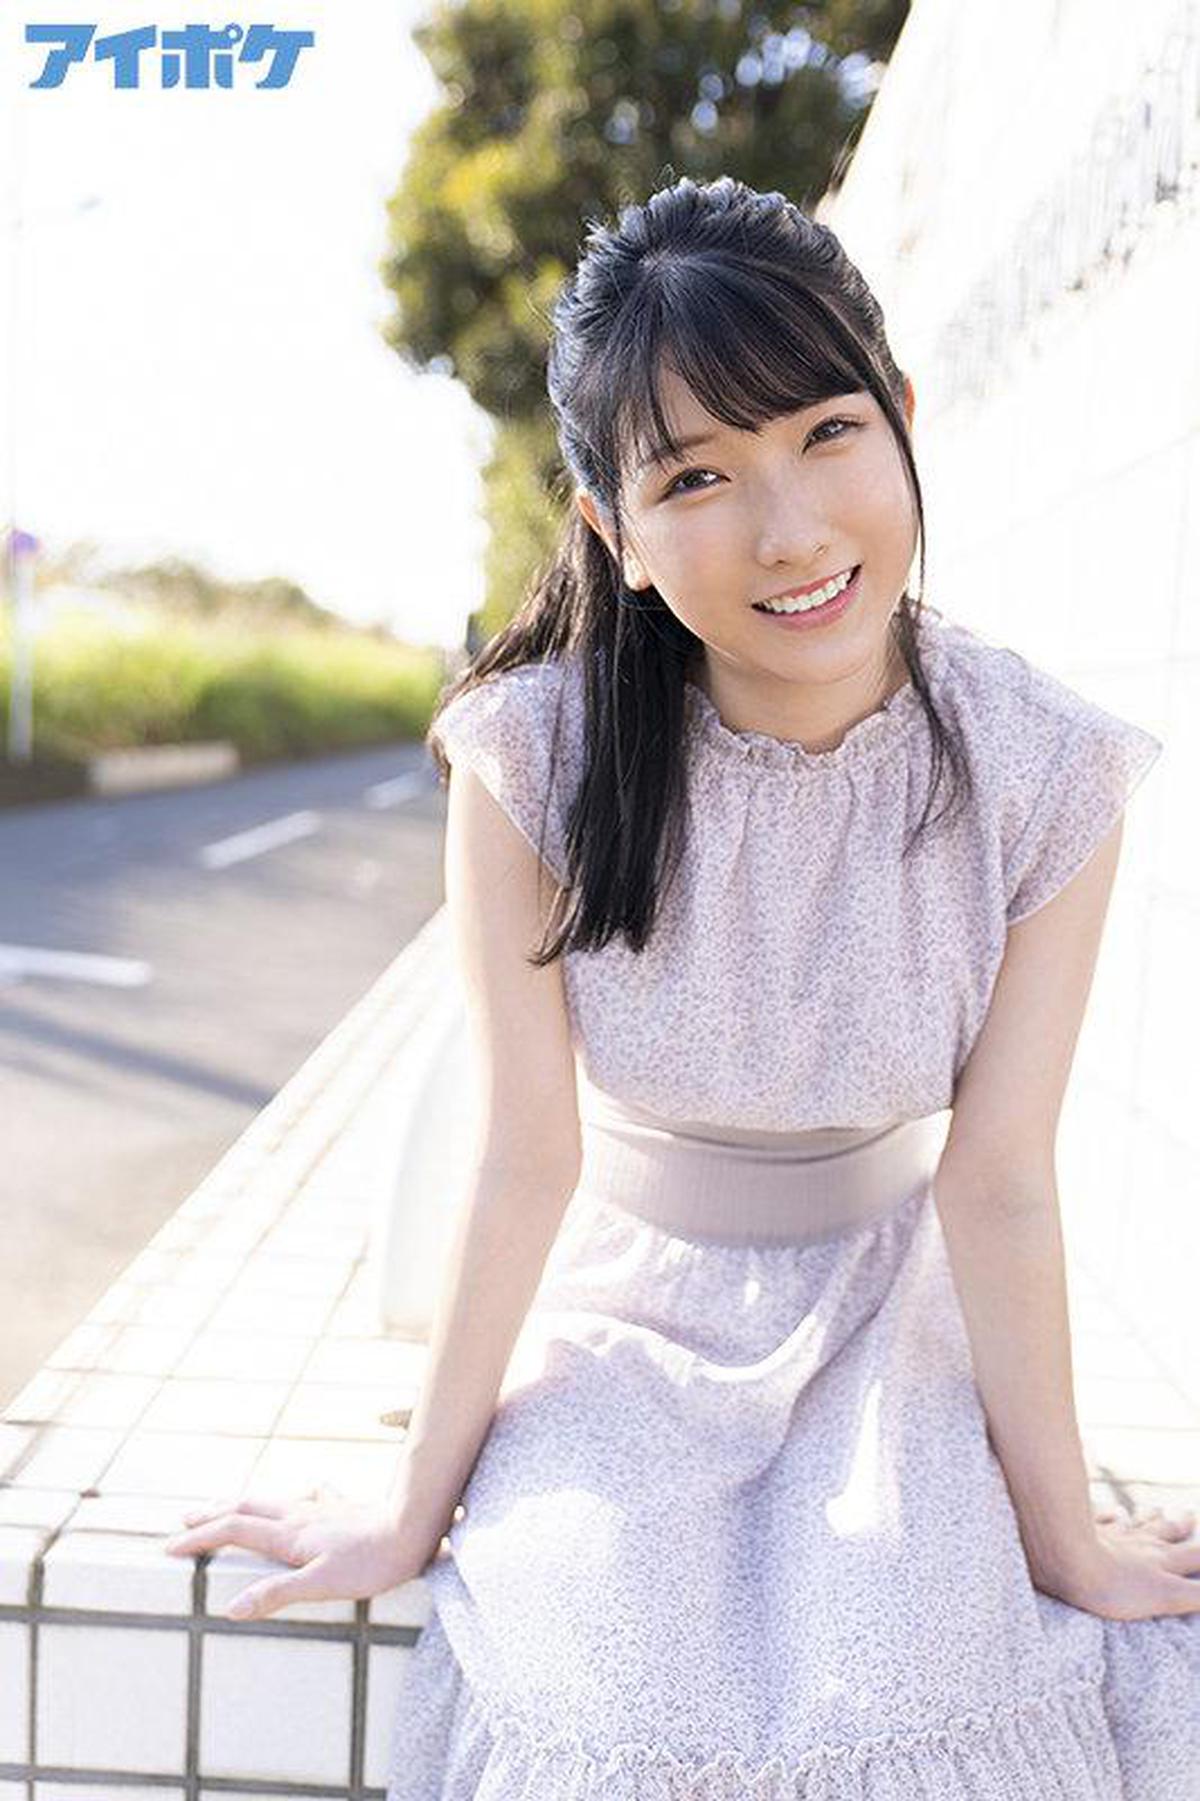 CHINASES SUB IPX-787 ПЕРВОЕ ВПЕЧАТЛЕНИЕ 152 Красивая грудастая сестра с милейшей улыбкой Hikaru Miyanishi